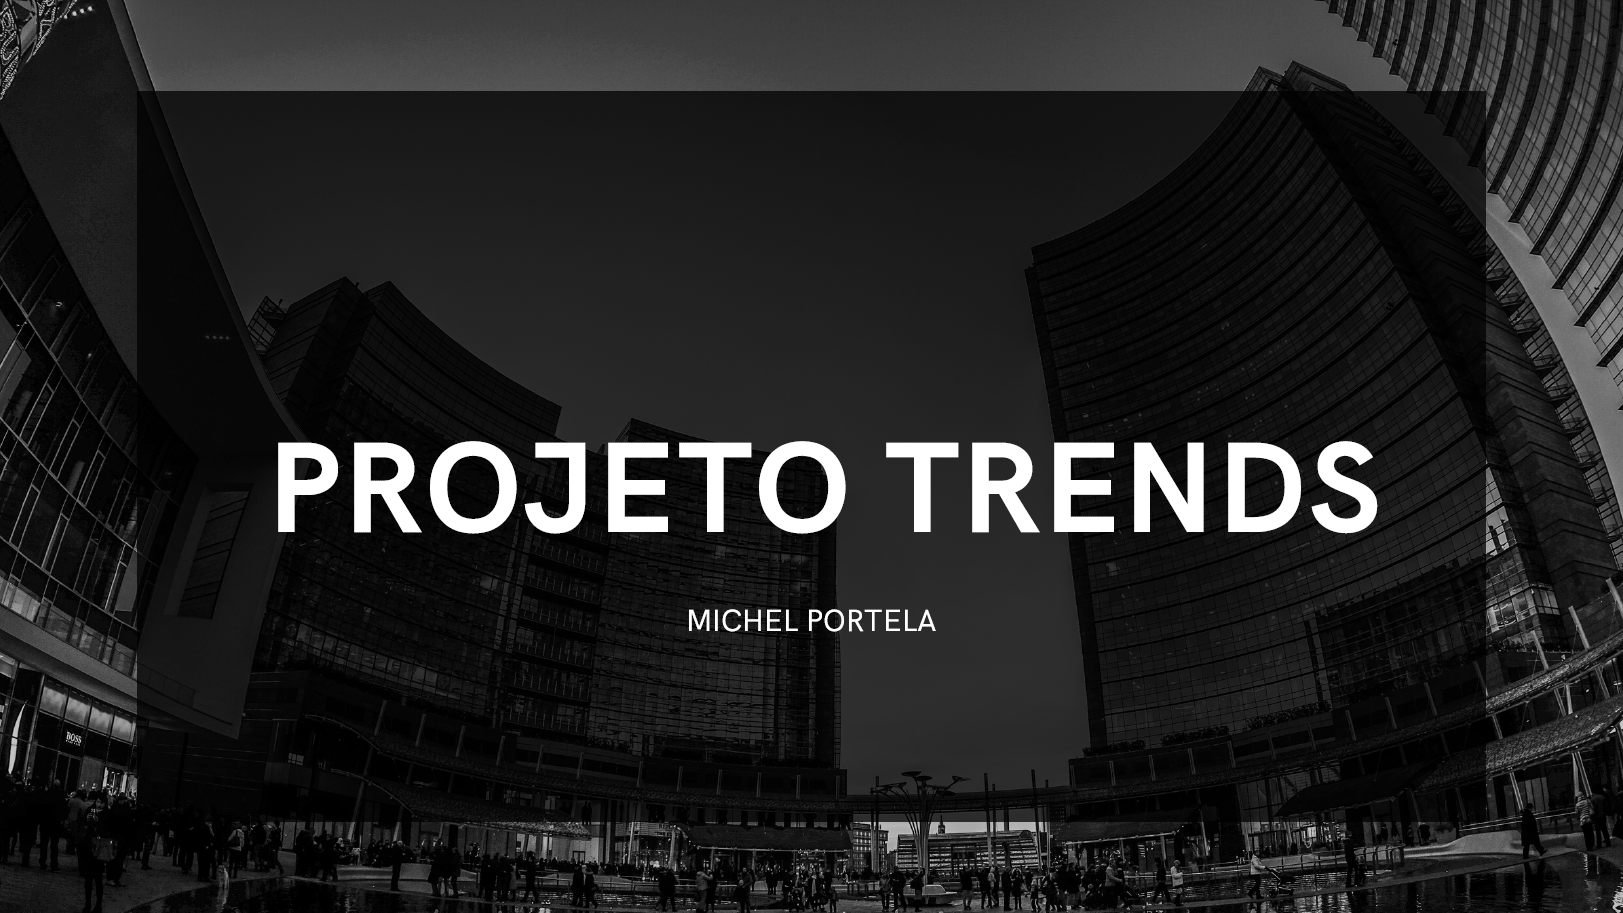 Portela Trader - Projeto Trends